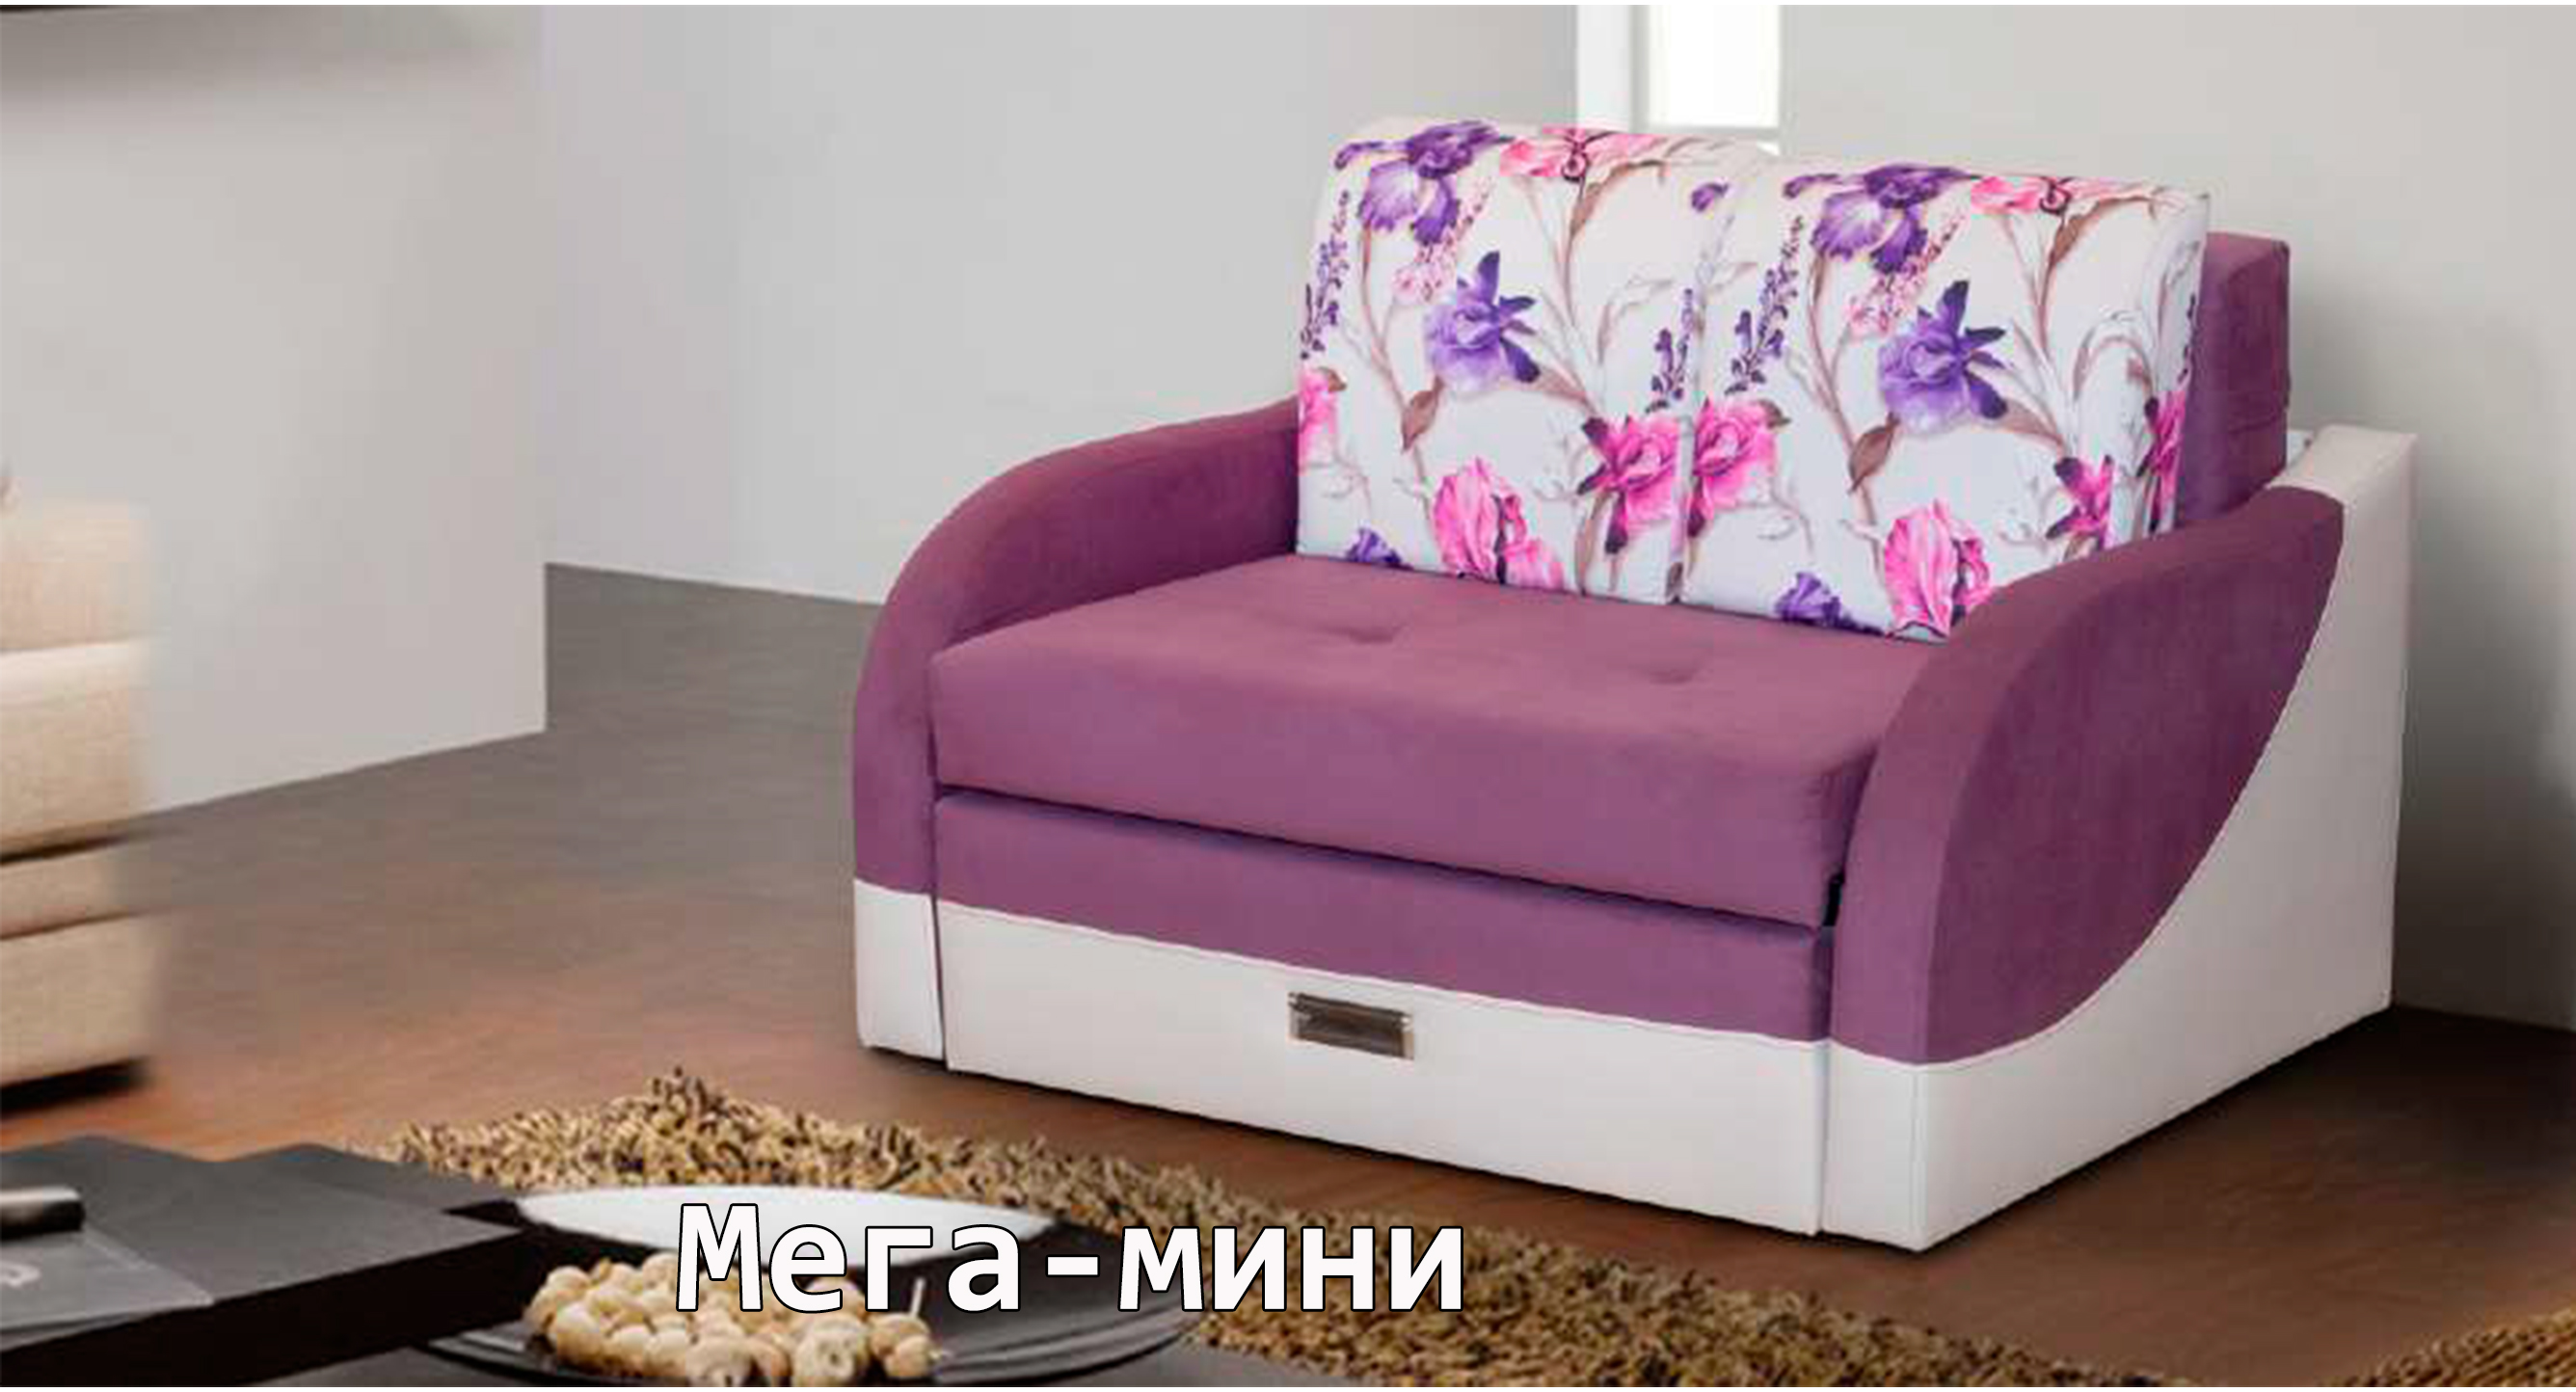 Мега Волга мебельная фабрика Ульяновск